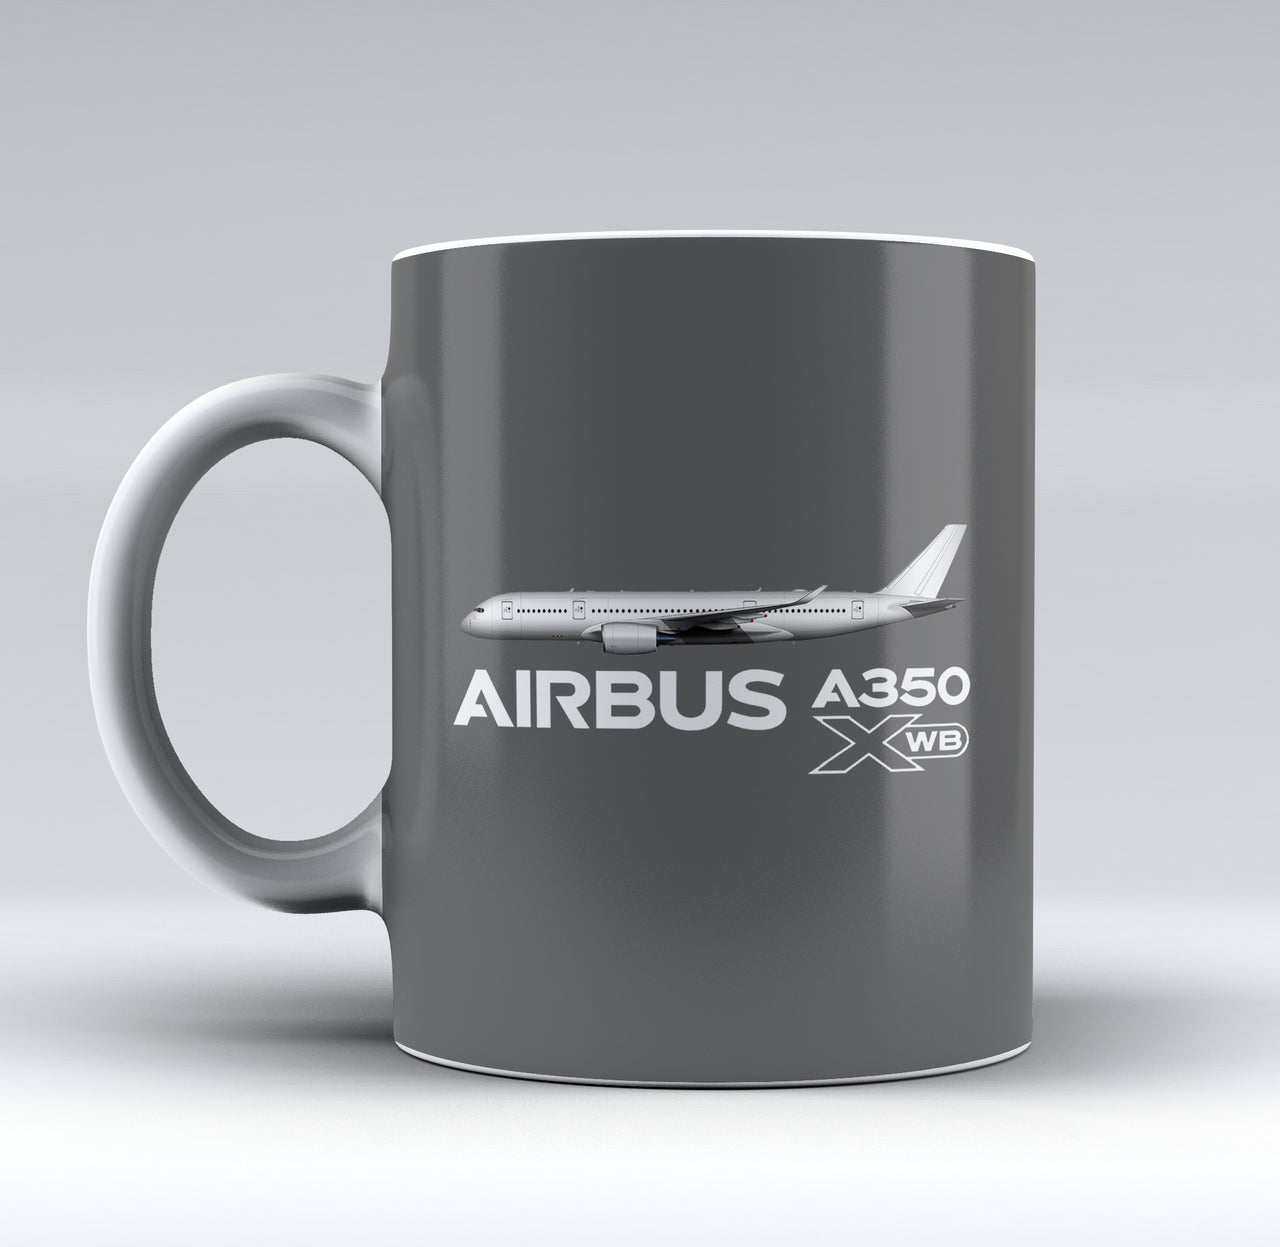 The Airbus A350 XWB Designed Mugs